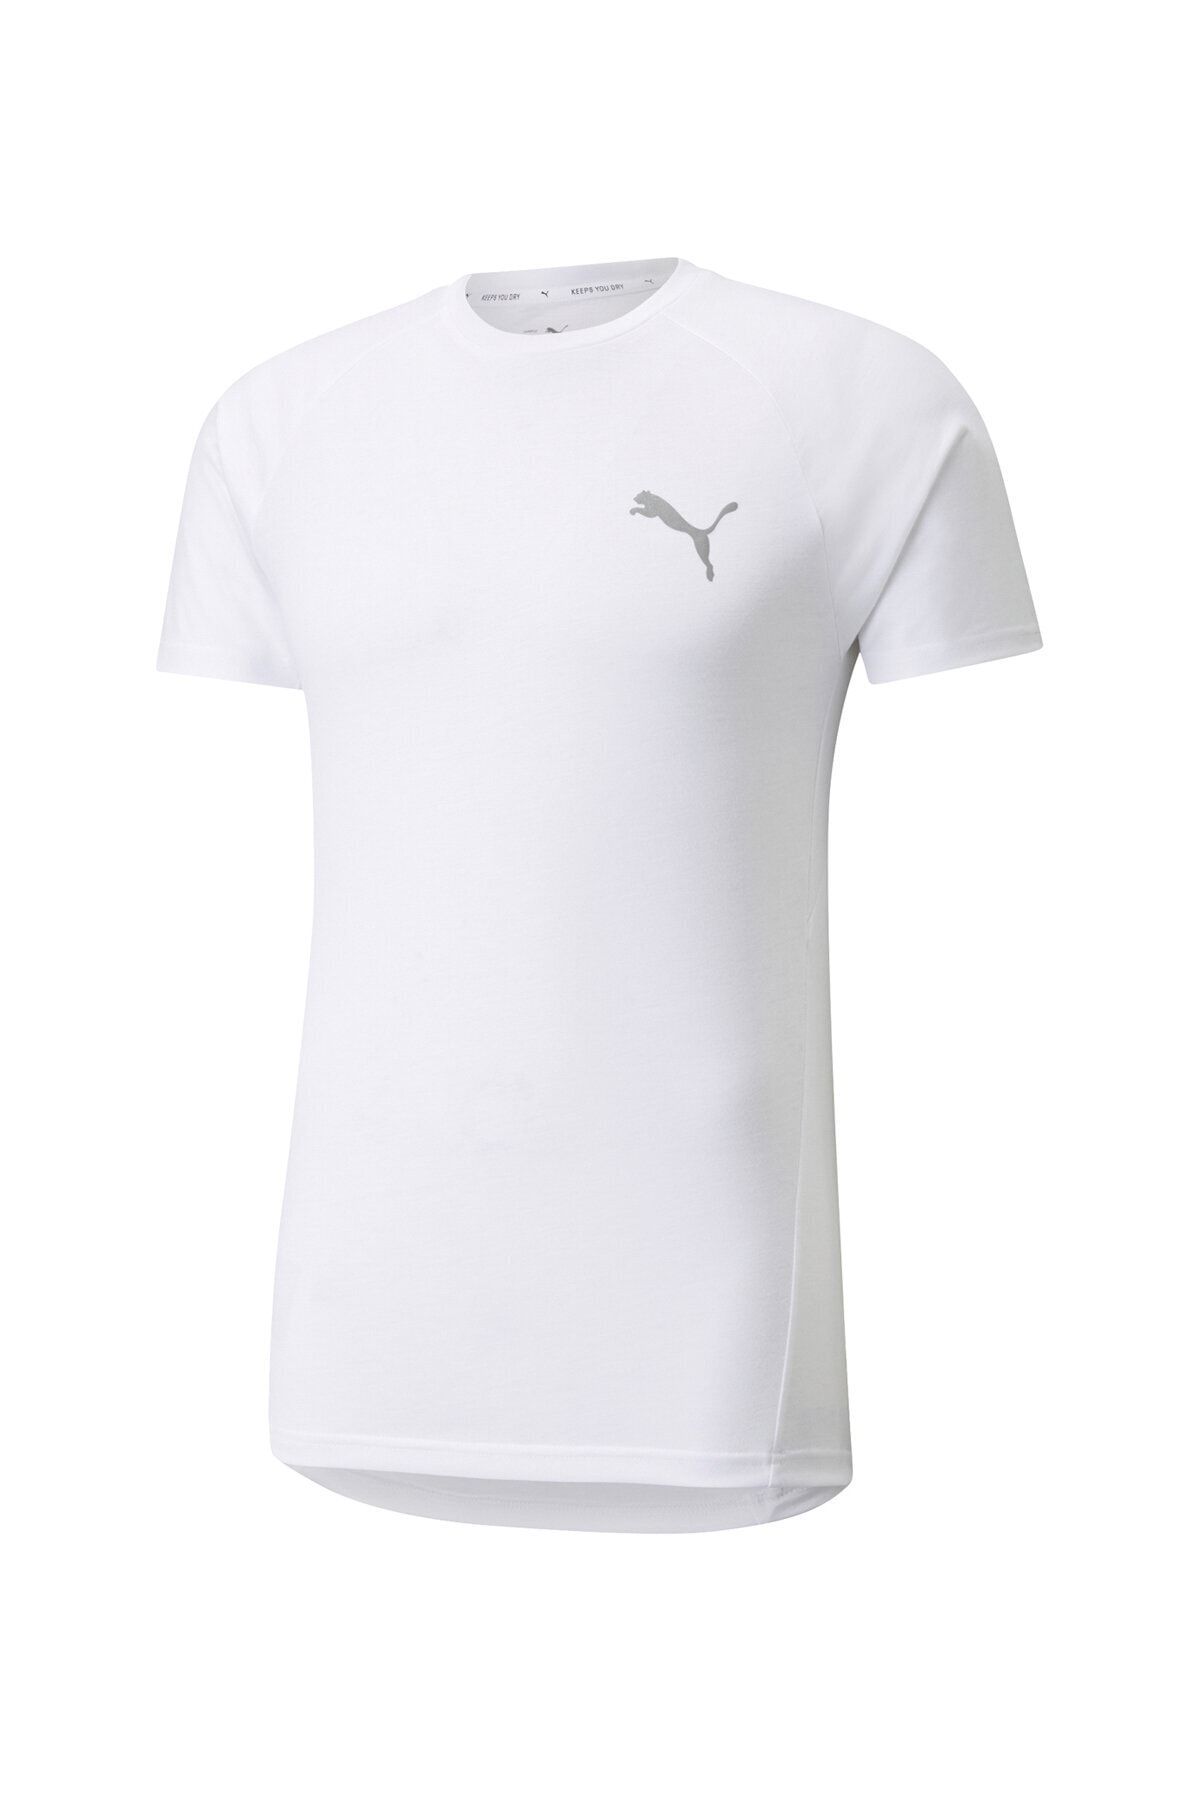 Puma Evostrıpe Tee Erkek Beyaz T-shirt - 58941702